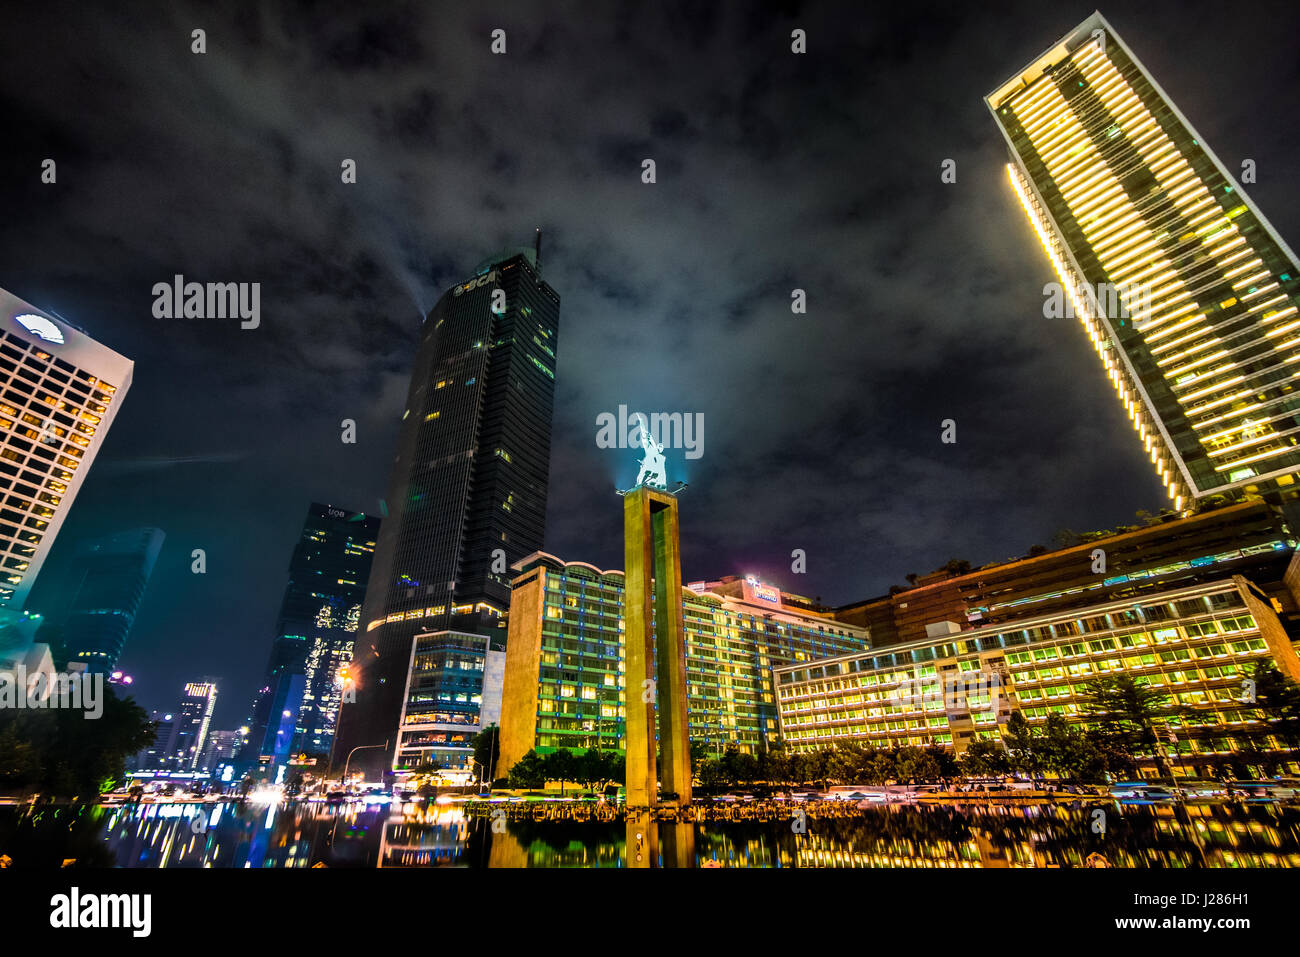 Willkommen-Denkmal im Herzen von Jakarta in der Nacht, umgeben von hohen Gebäuden in der Region bekannt als Bundaran HI. Stockfoto